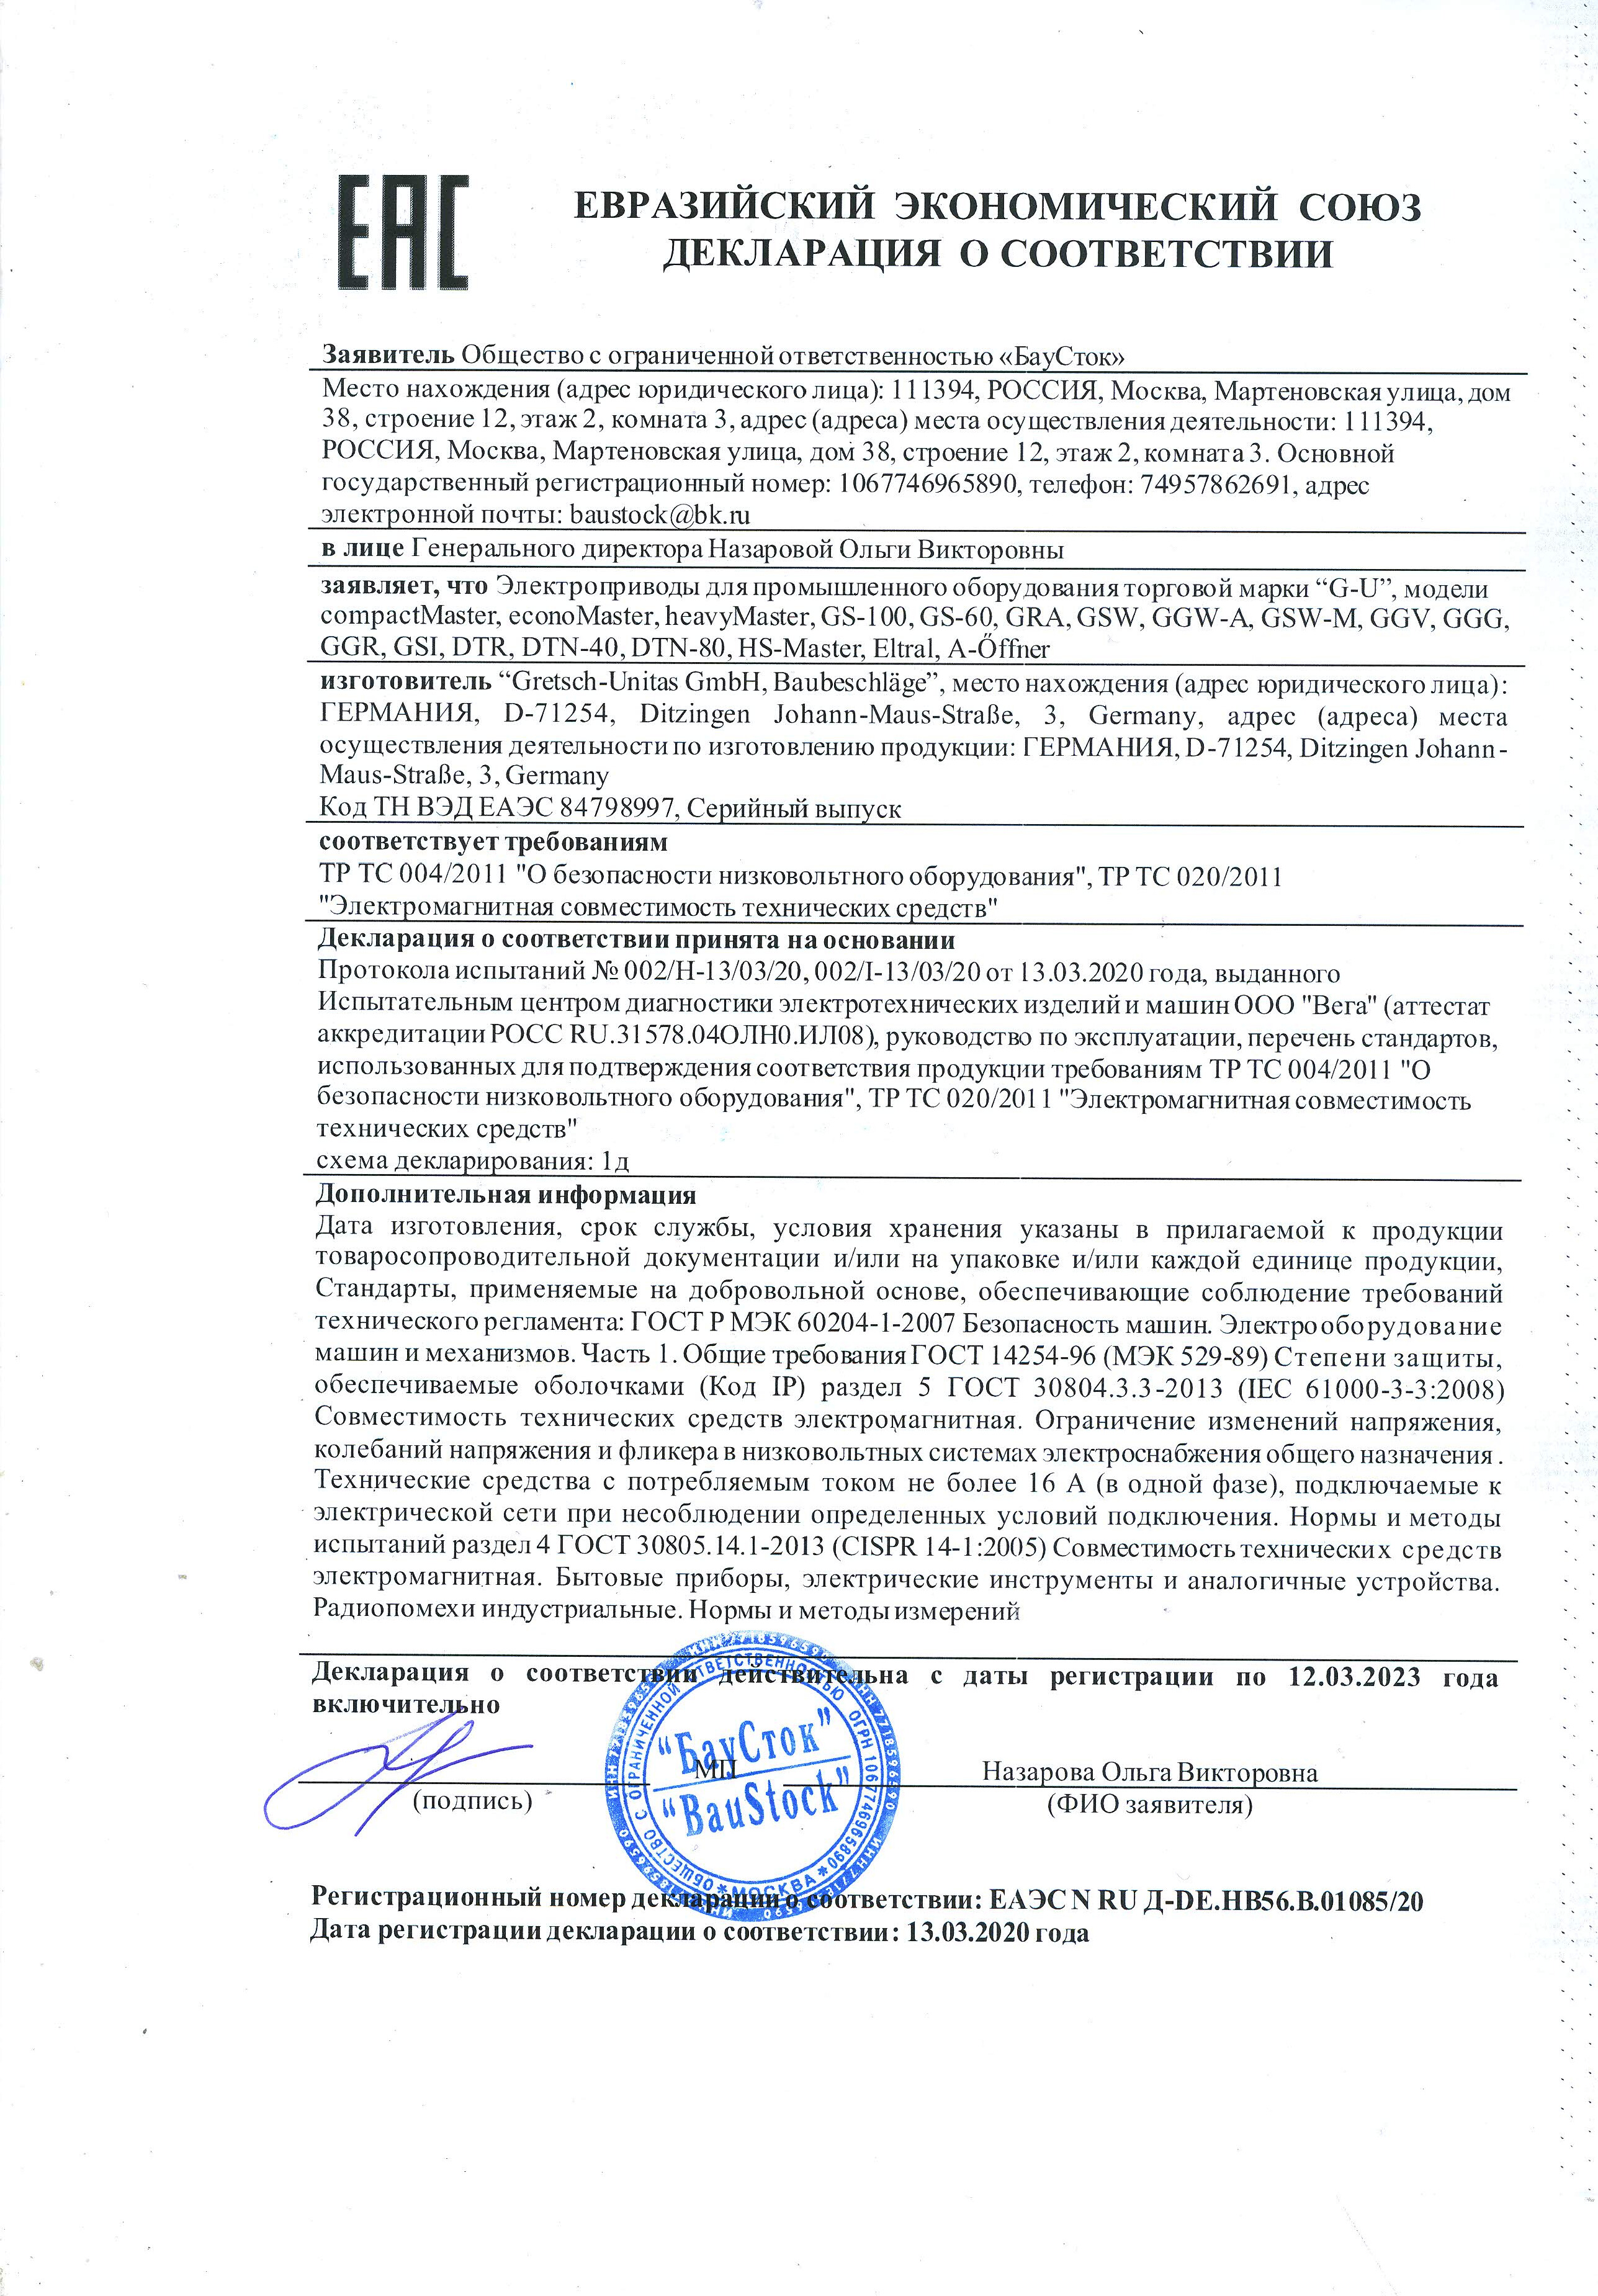 Сертификат или декларация о соответствии на шампунь 2020